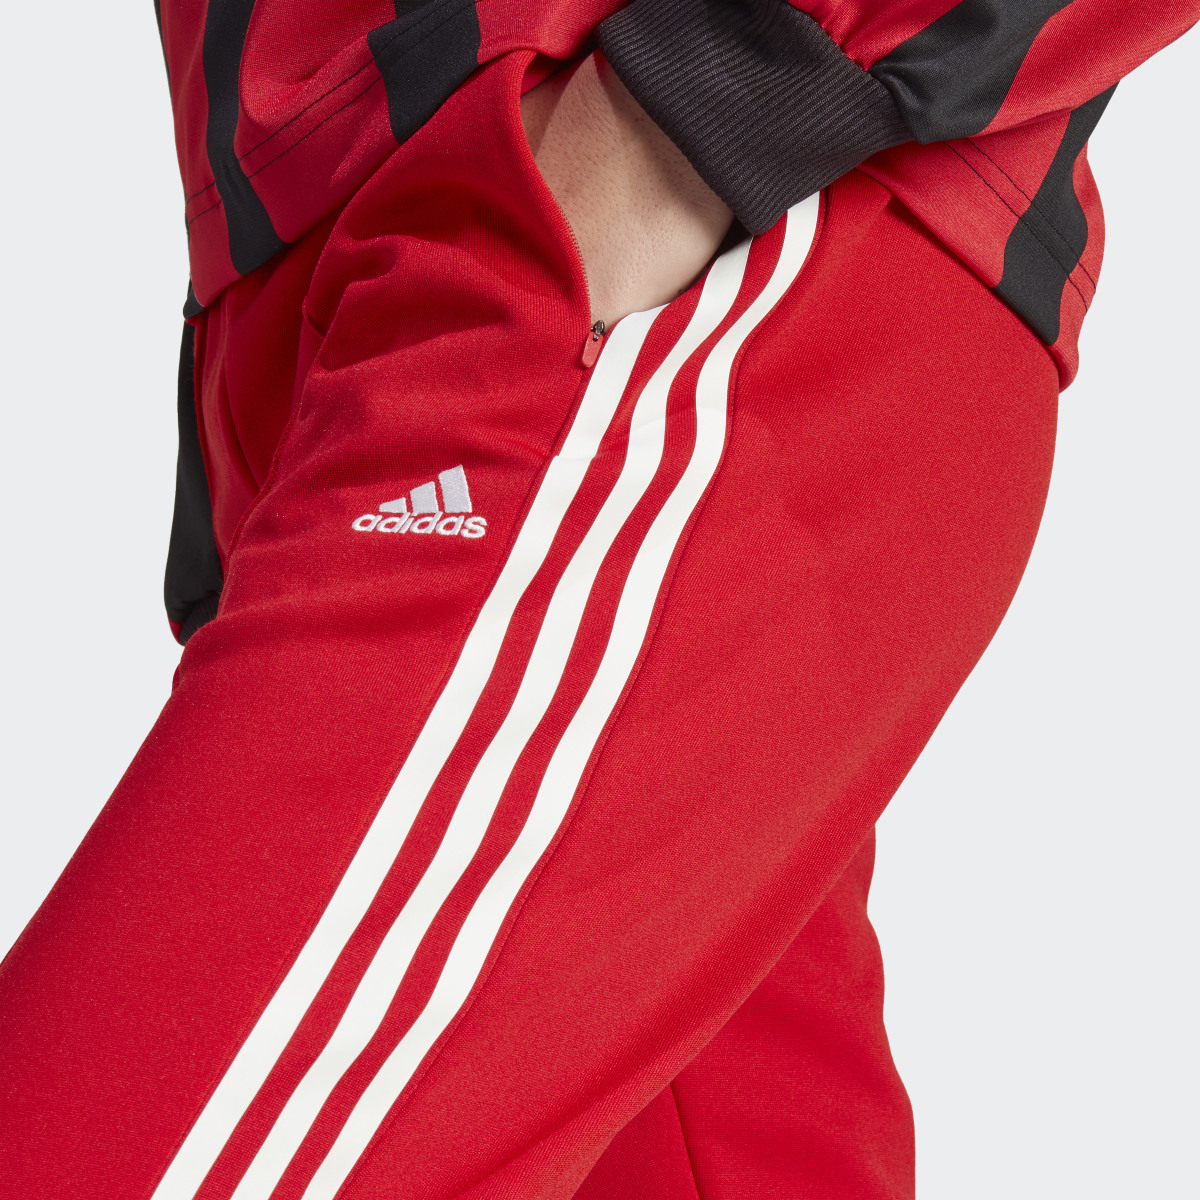 Adidas Tiro Suit Up Lifestyle Trainingshose. 6